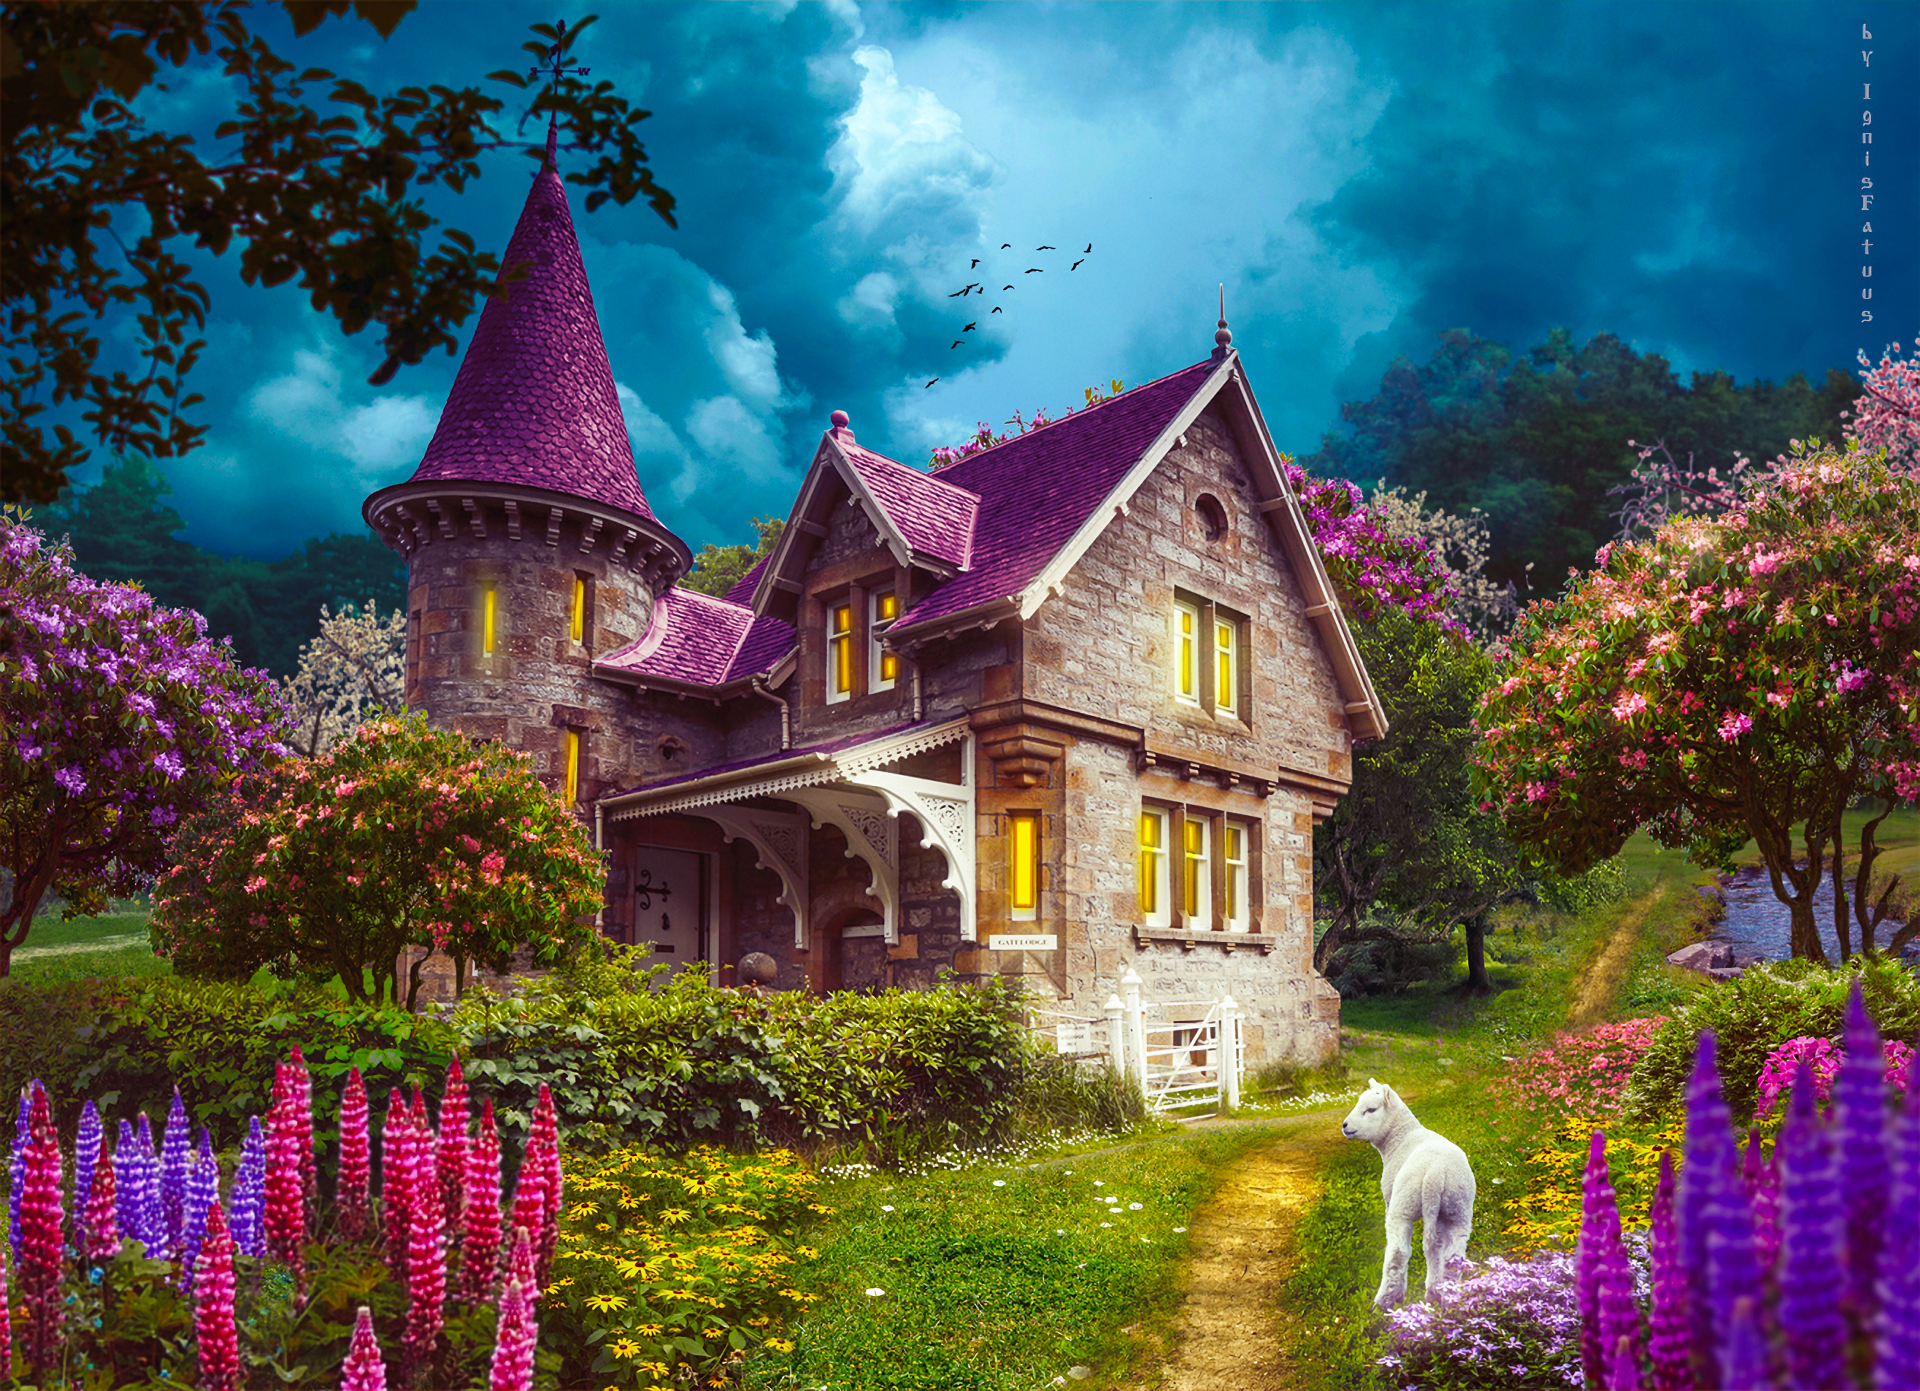 Enchanted House by Tatyana Haustova